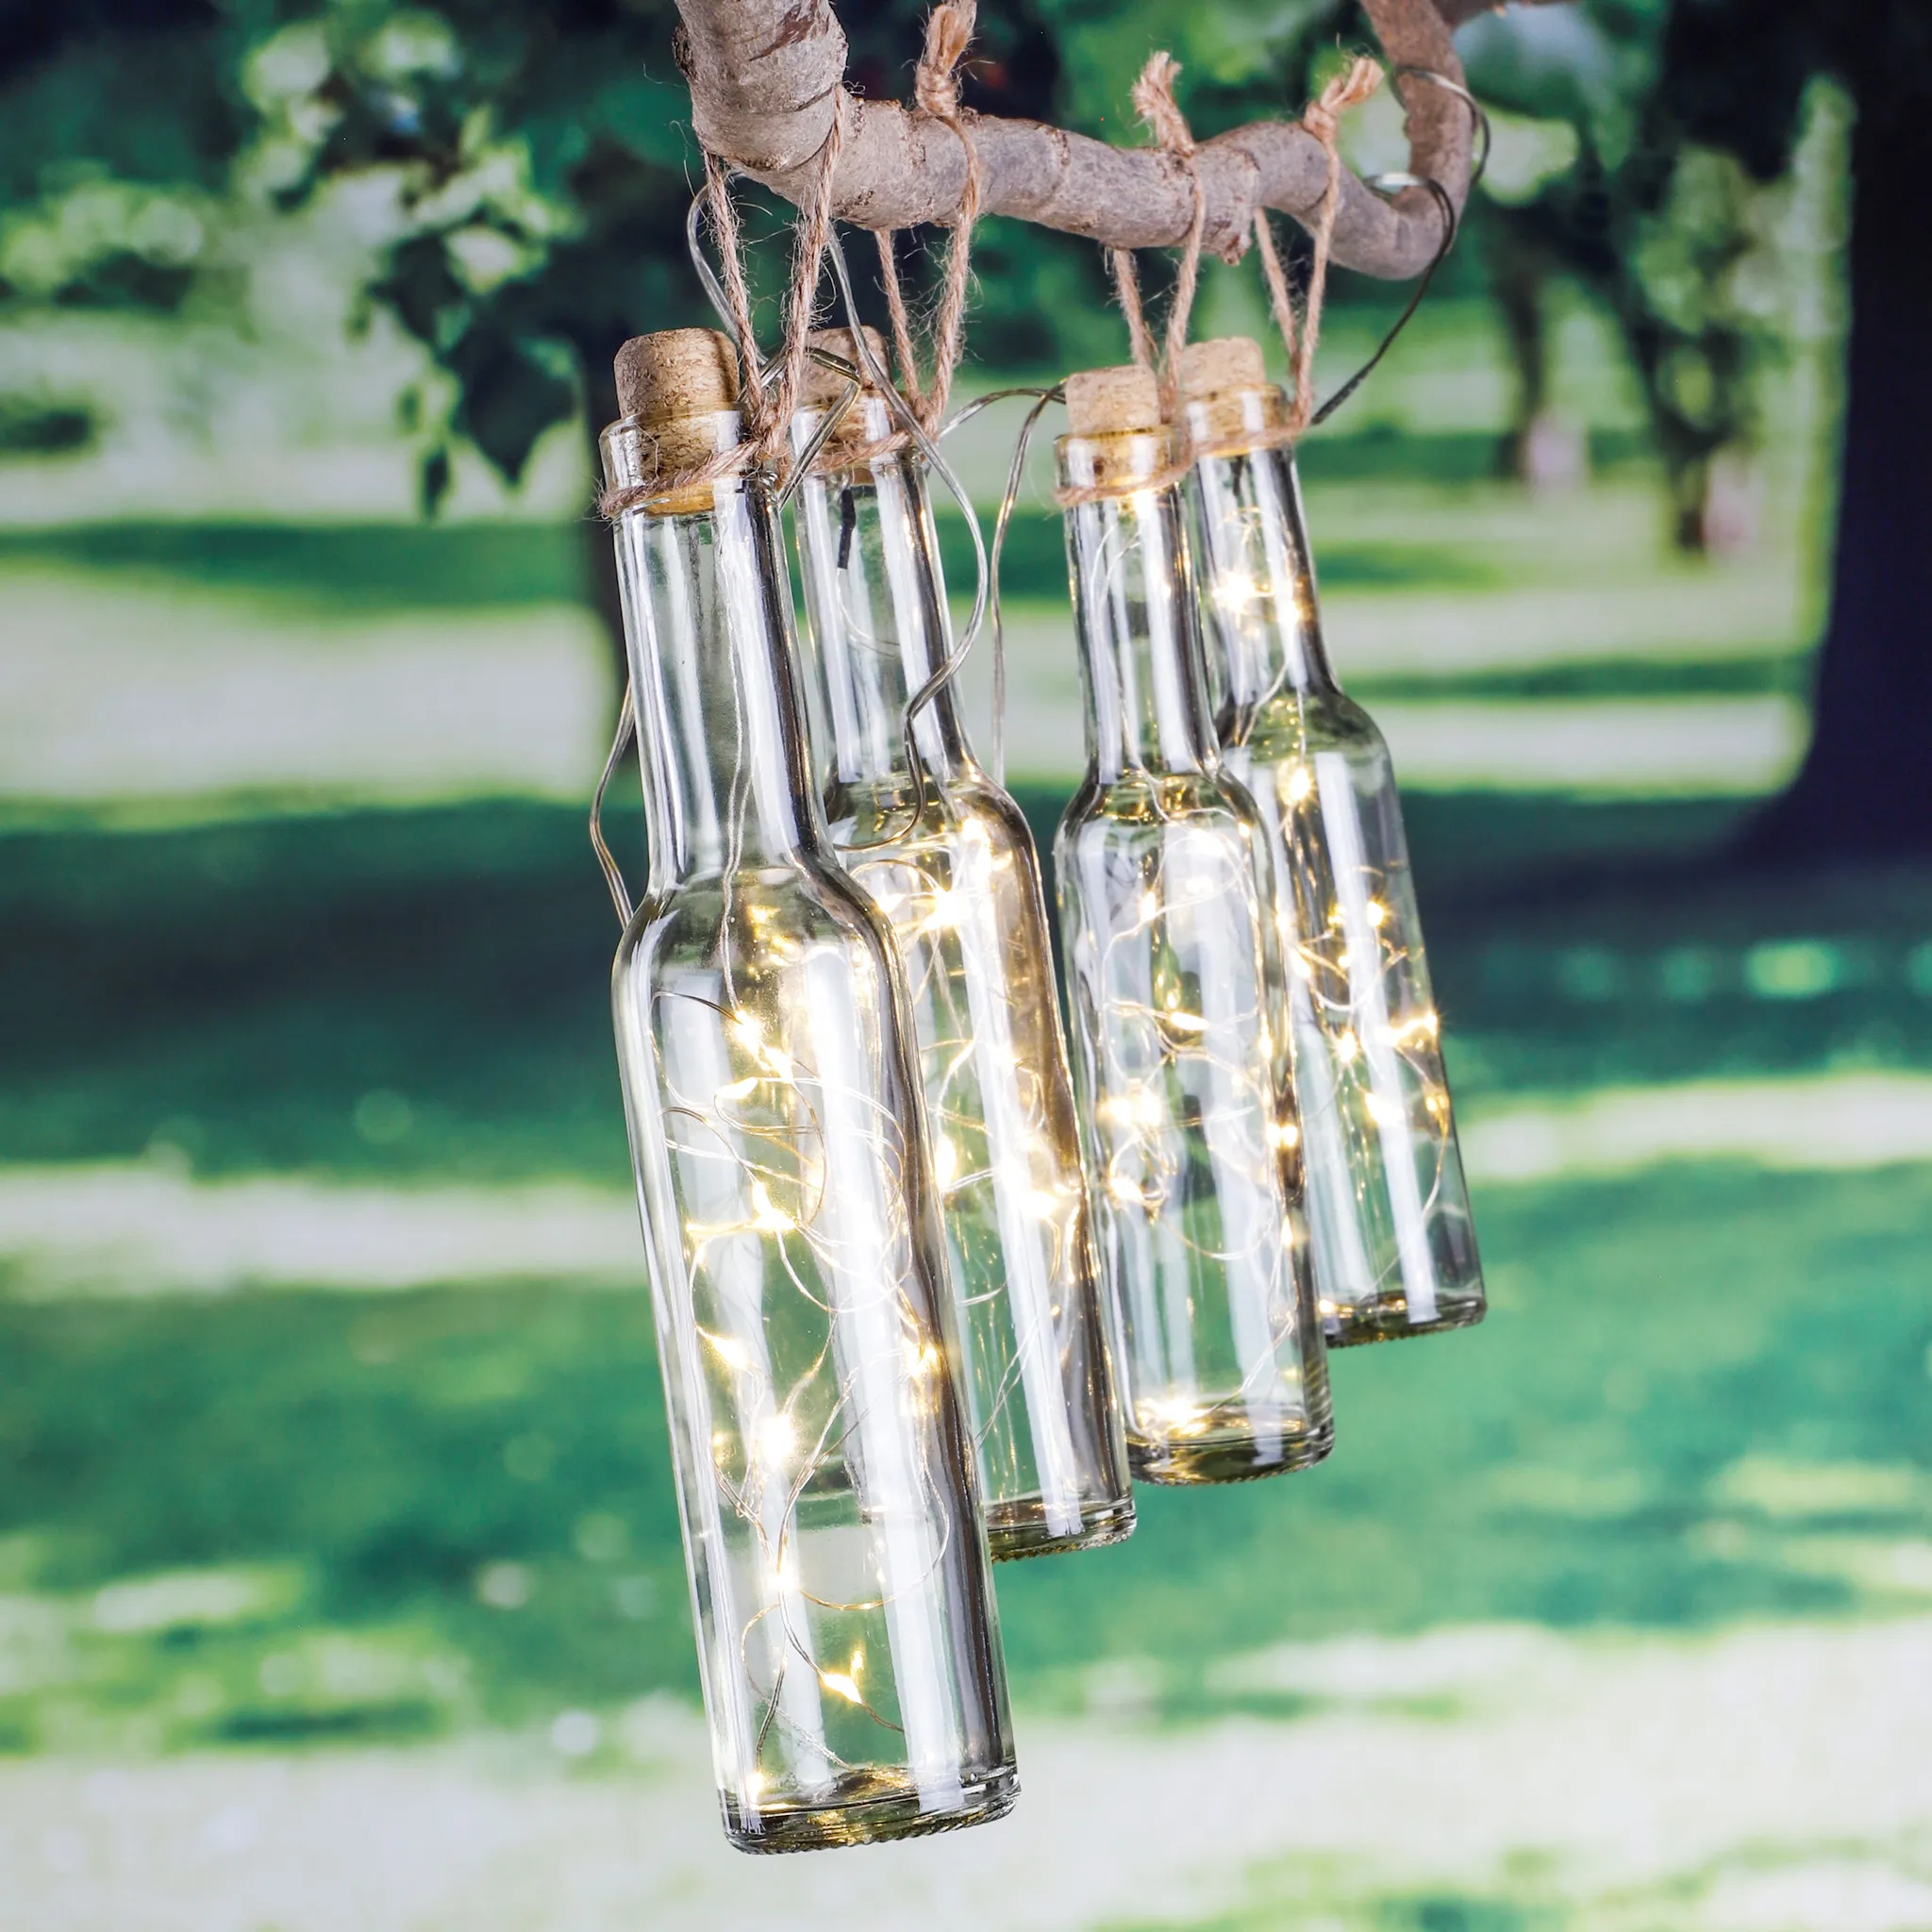 warmes Weiß KZOBYD 8 Stück Solar Diamant Flaschenlichter Kreative Flaschenkorken mit Lichtern 20 LED Weinflaschen-Lichter Kork Lichterkette Solar Powered für Garten Terrasse Outdoor Tischdekoration 